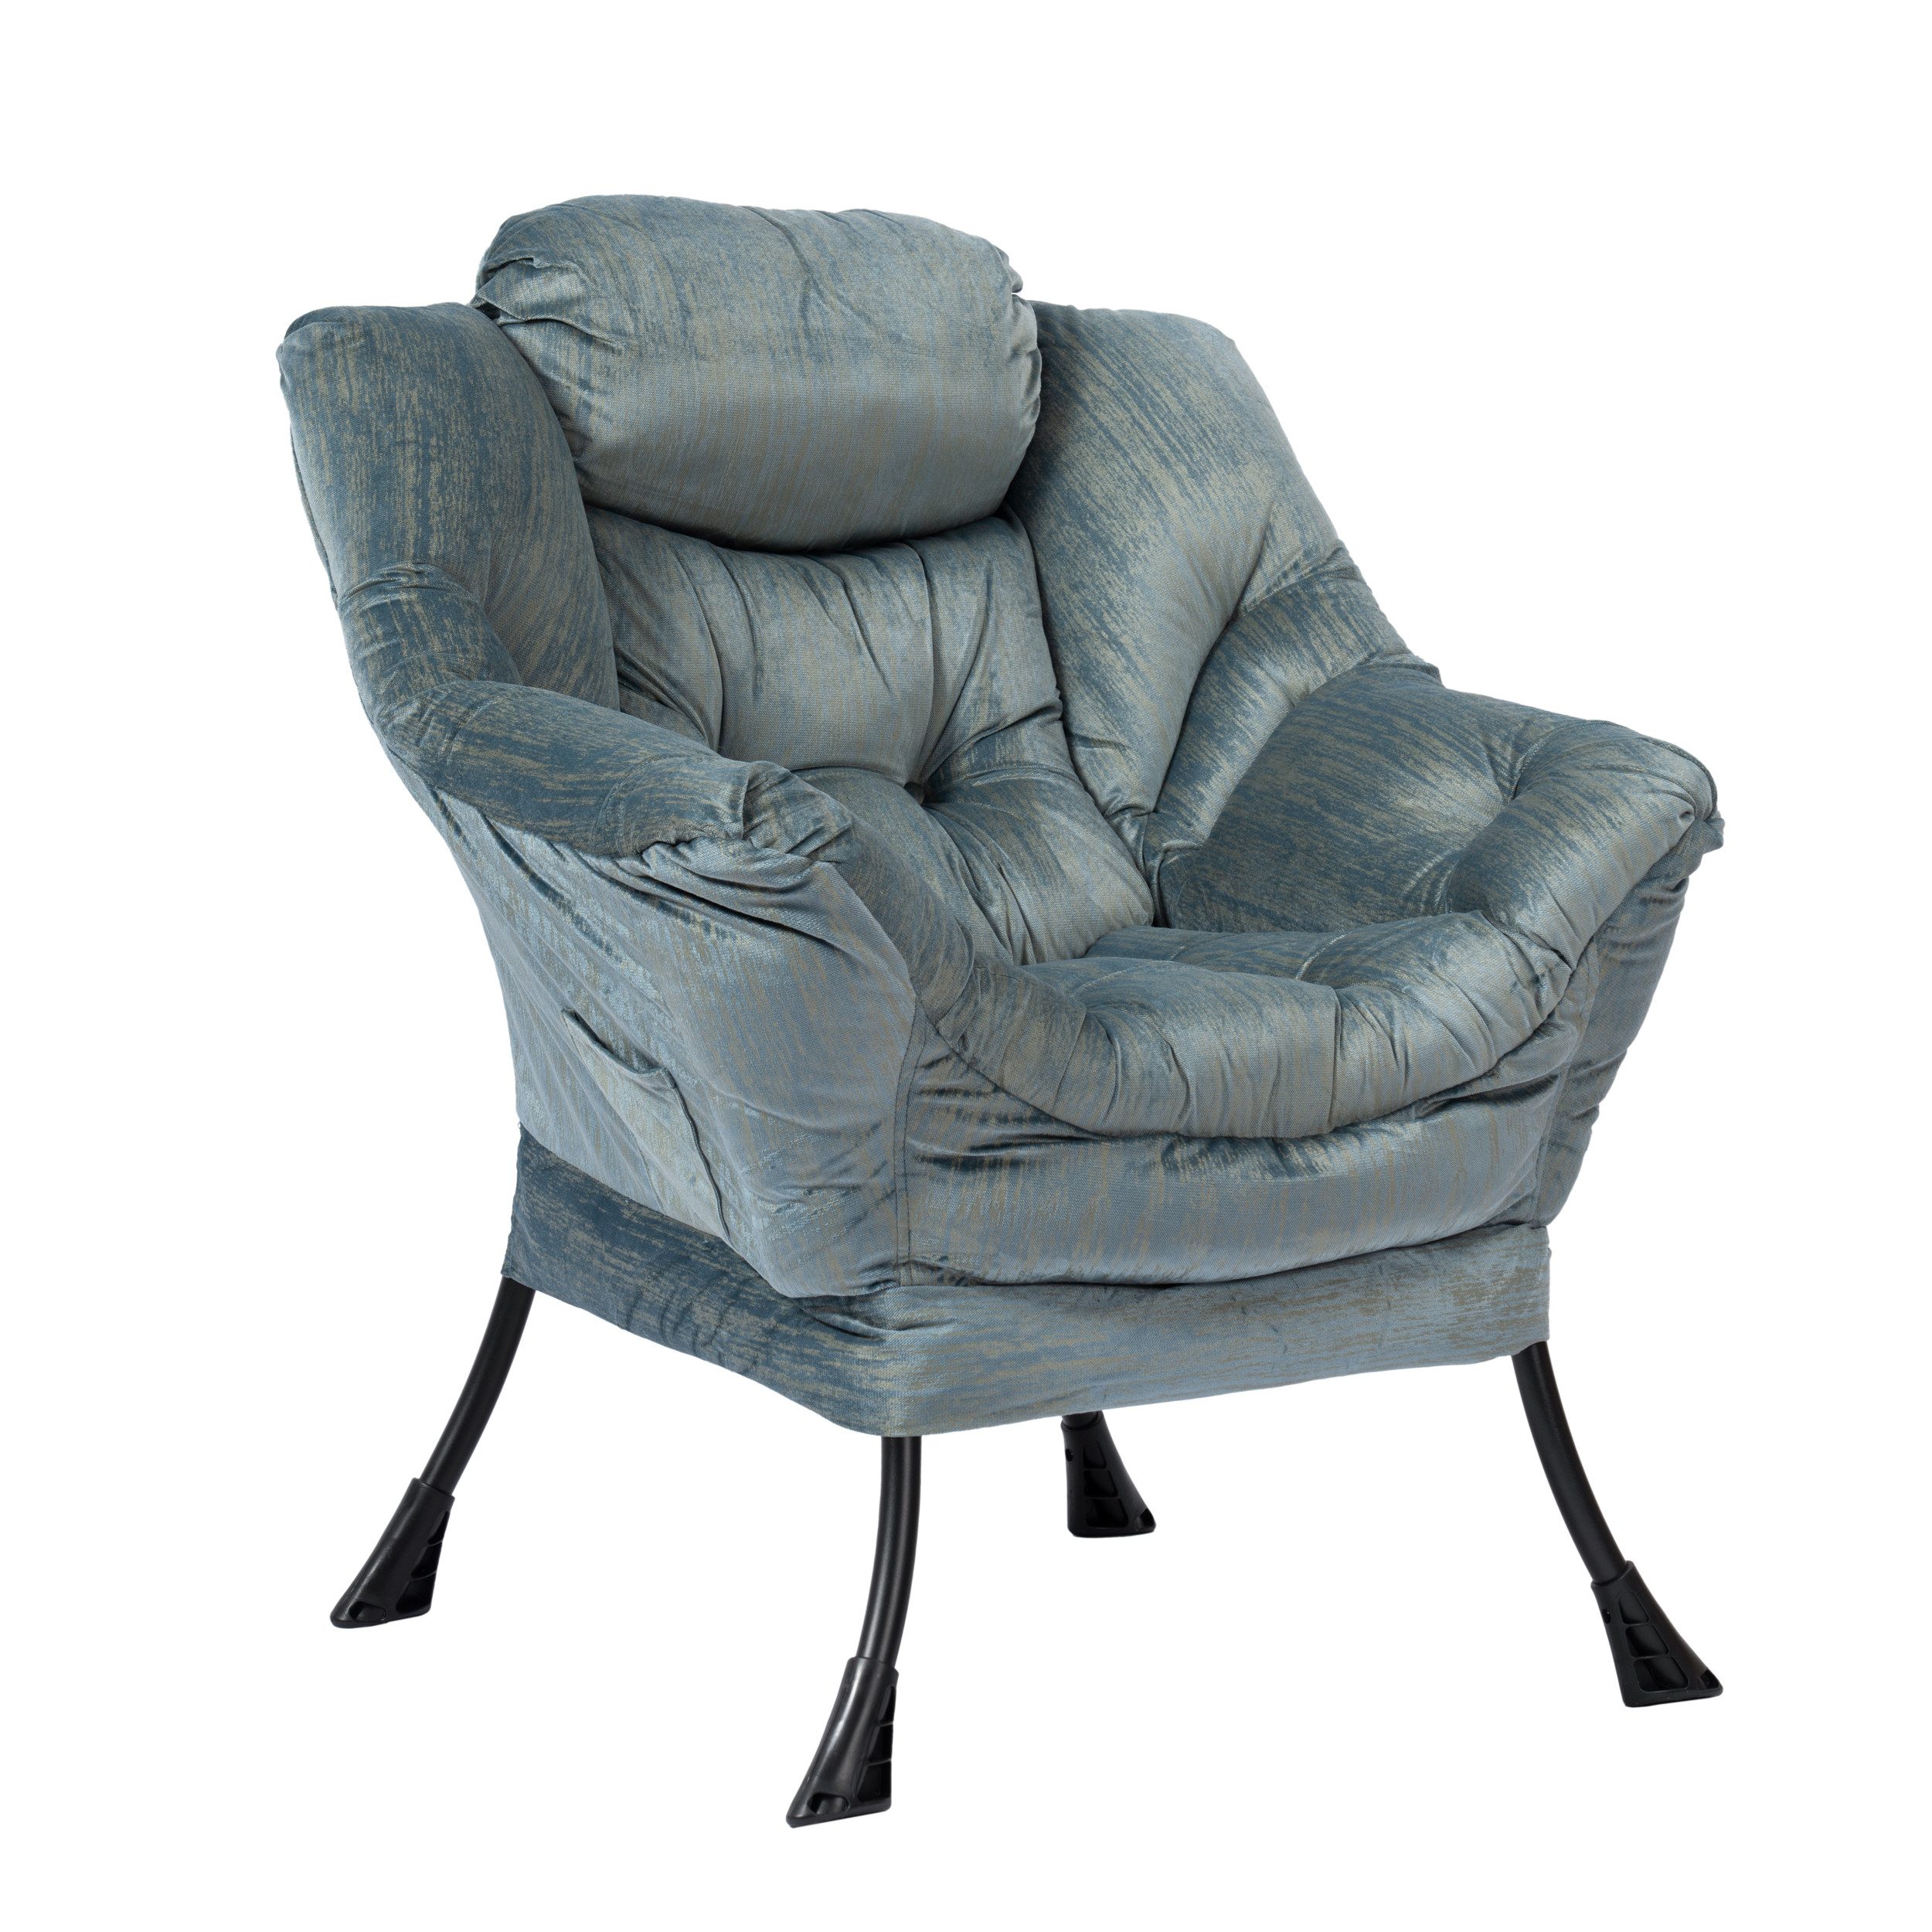 Vankel Ohrensessel Relaxsessel Sessel Chaiselongue mit Armlehnen und Taschen, seeblau/goldgrau, bis zu 200 kg Tragkraft